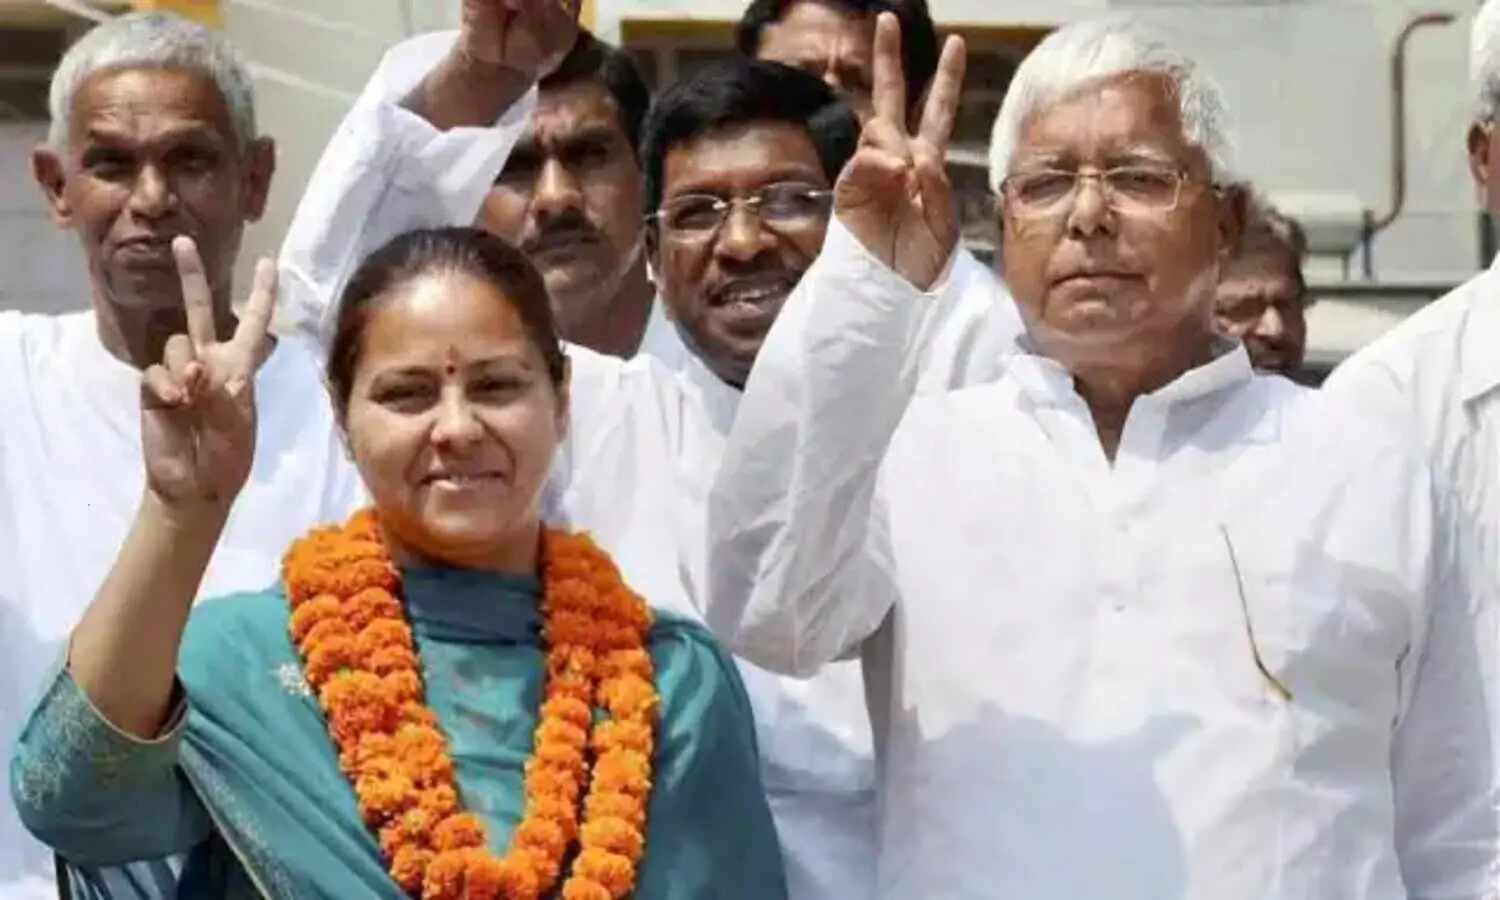 Bihar Politics: लालू के कुनबे में अंतर्कलह तेज, मांझी की पार्टी का बड़ा दावा- अब मीसा भारती लेंगी लालू की जगह